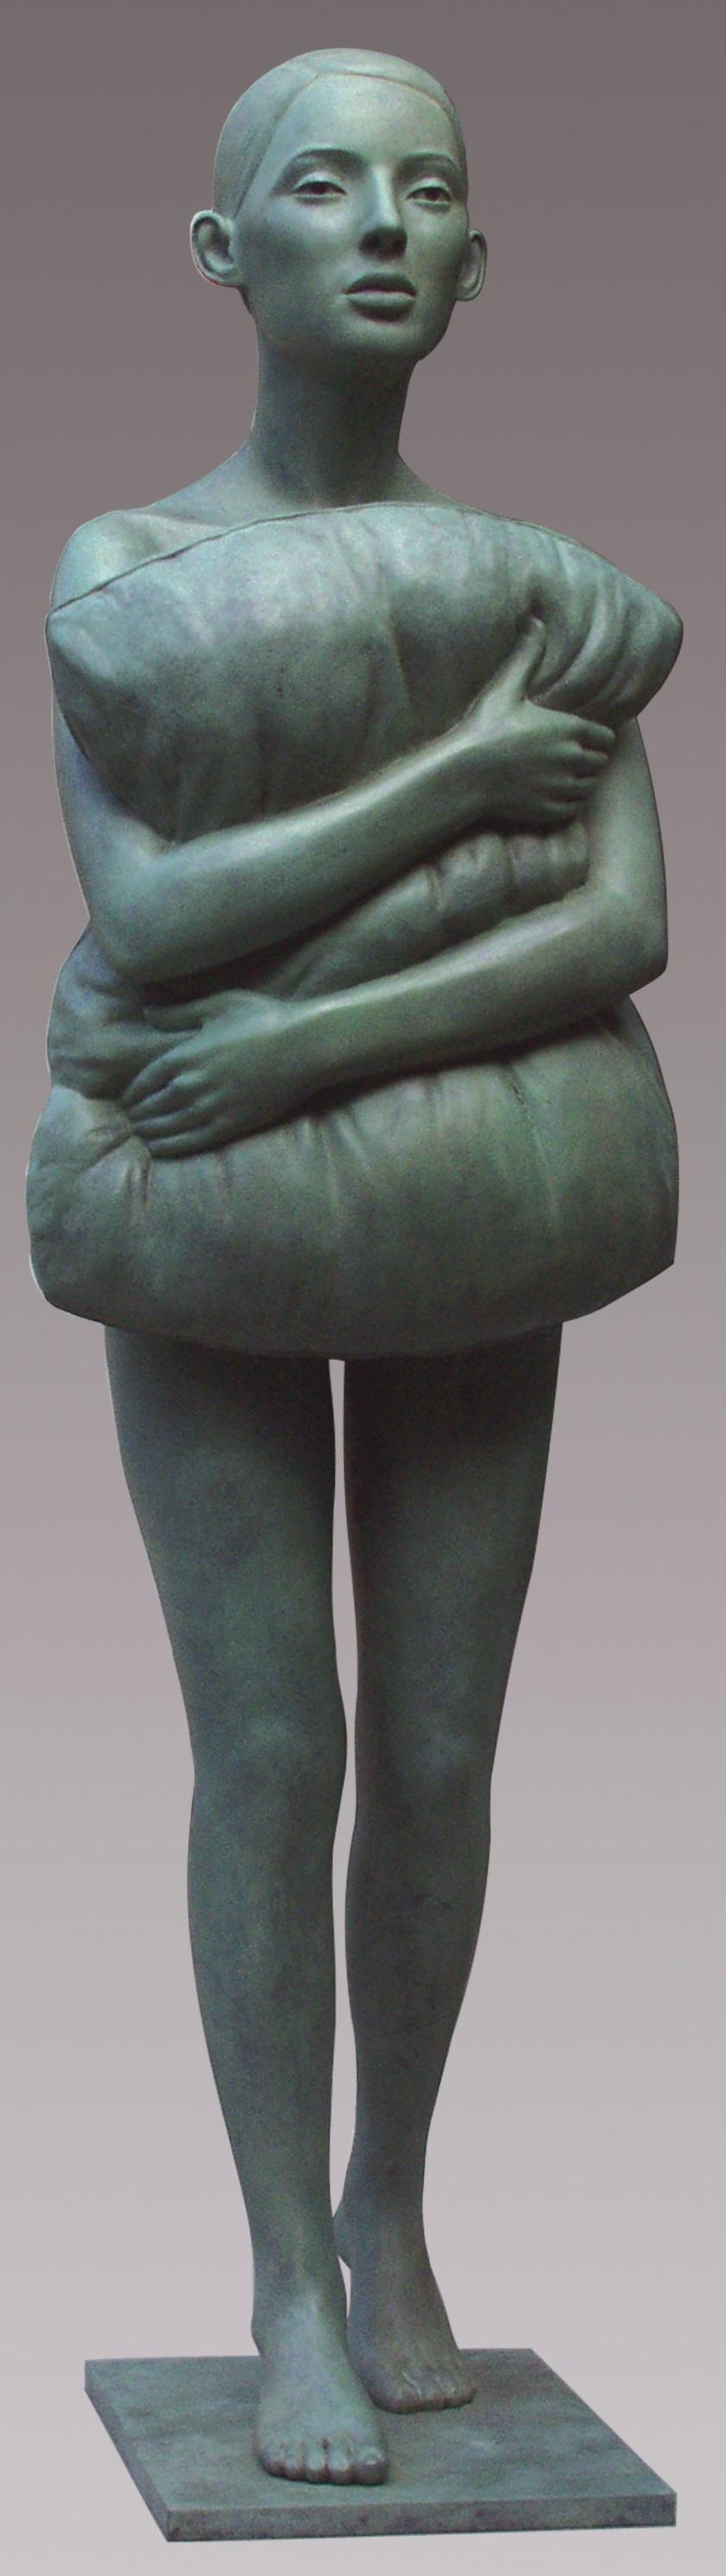 Kussen Kissen Bronze-Skulptur stehendes Mädchen mit grüner Patina (Gold), Figurative Sculpture, von Erwin Meijer